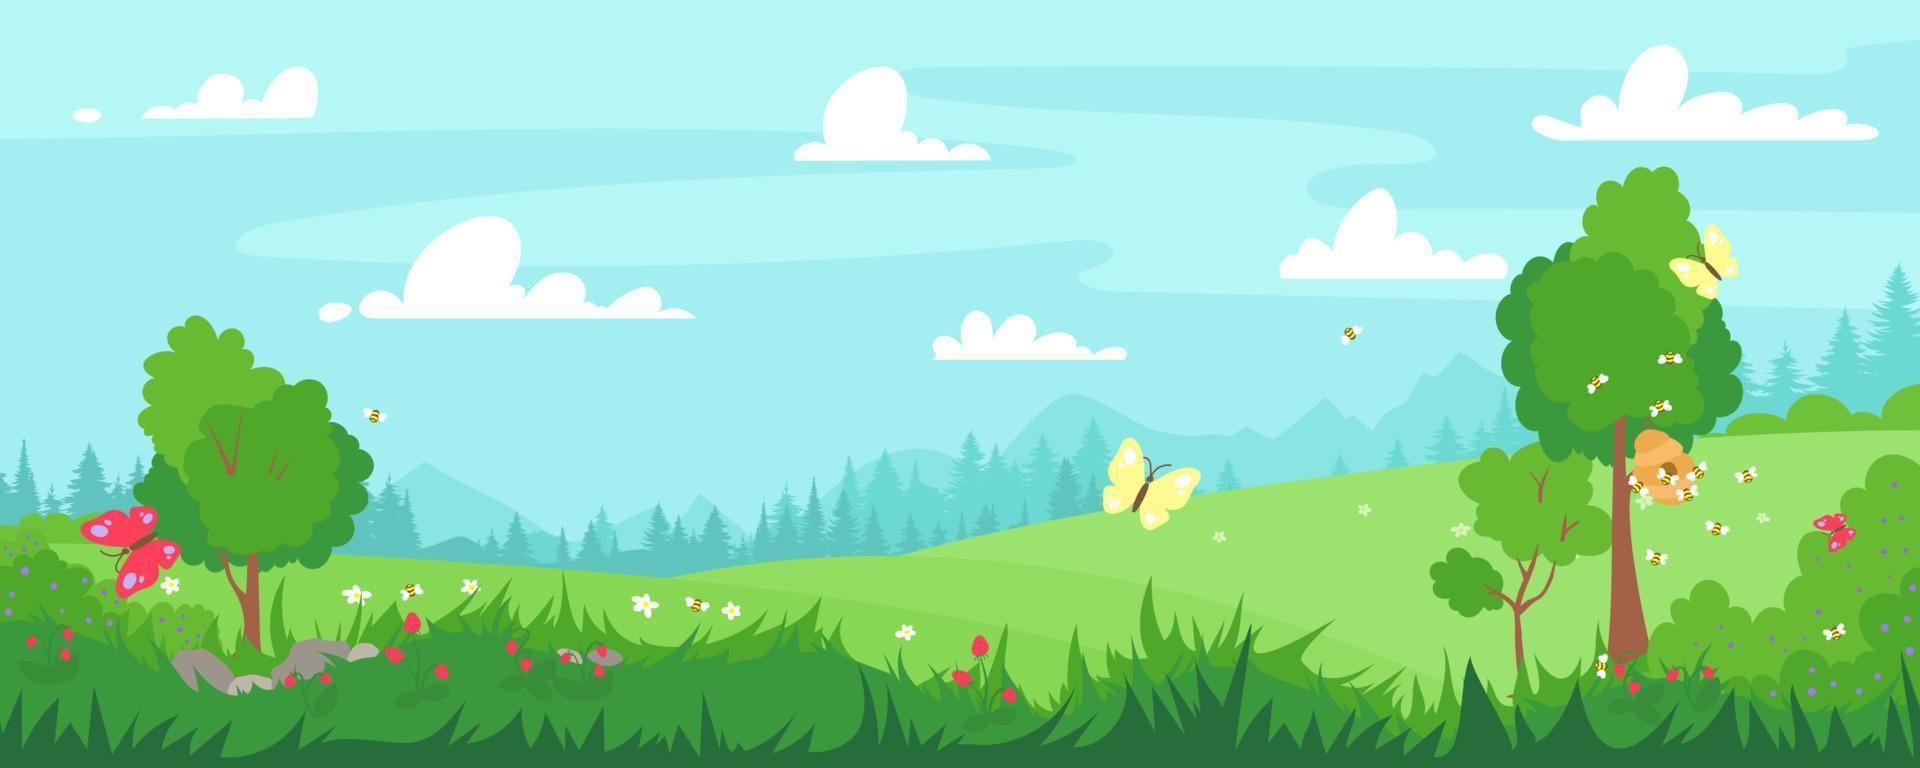 vektorillustration von schönen sommerlandschaftsfeldern, blumen, honigbiene, gras, bäumen, grünen hügeln, bergen, blauem himmel, wolkenlandhintergrund im flachen bannerkarikaturstil. Frühling. vektor